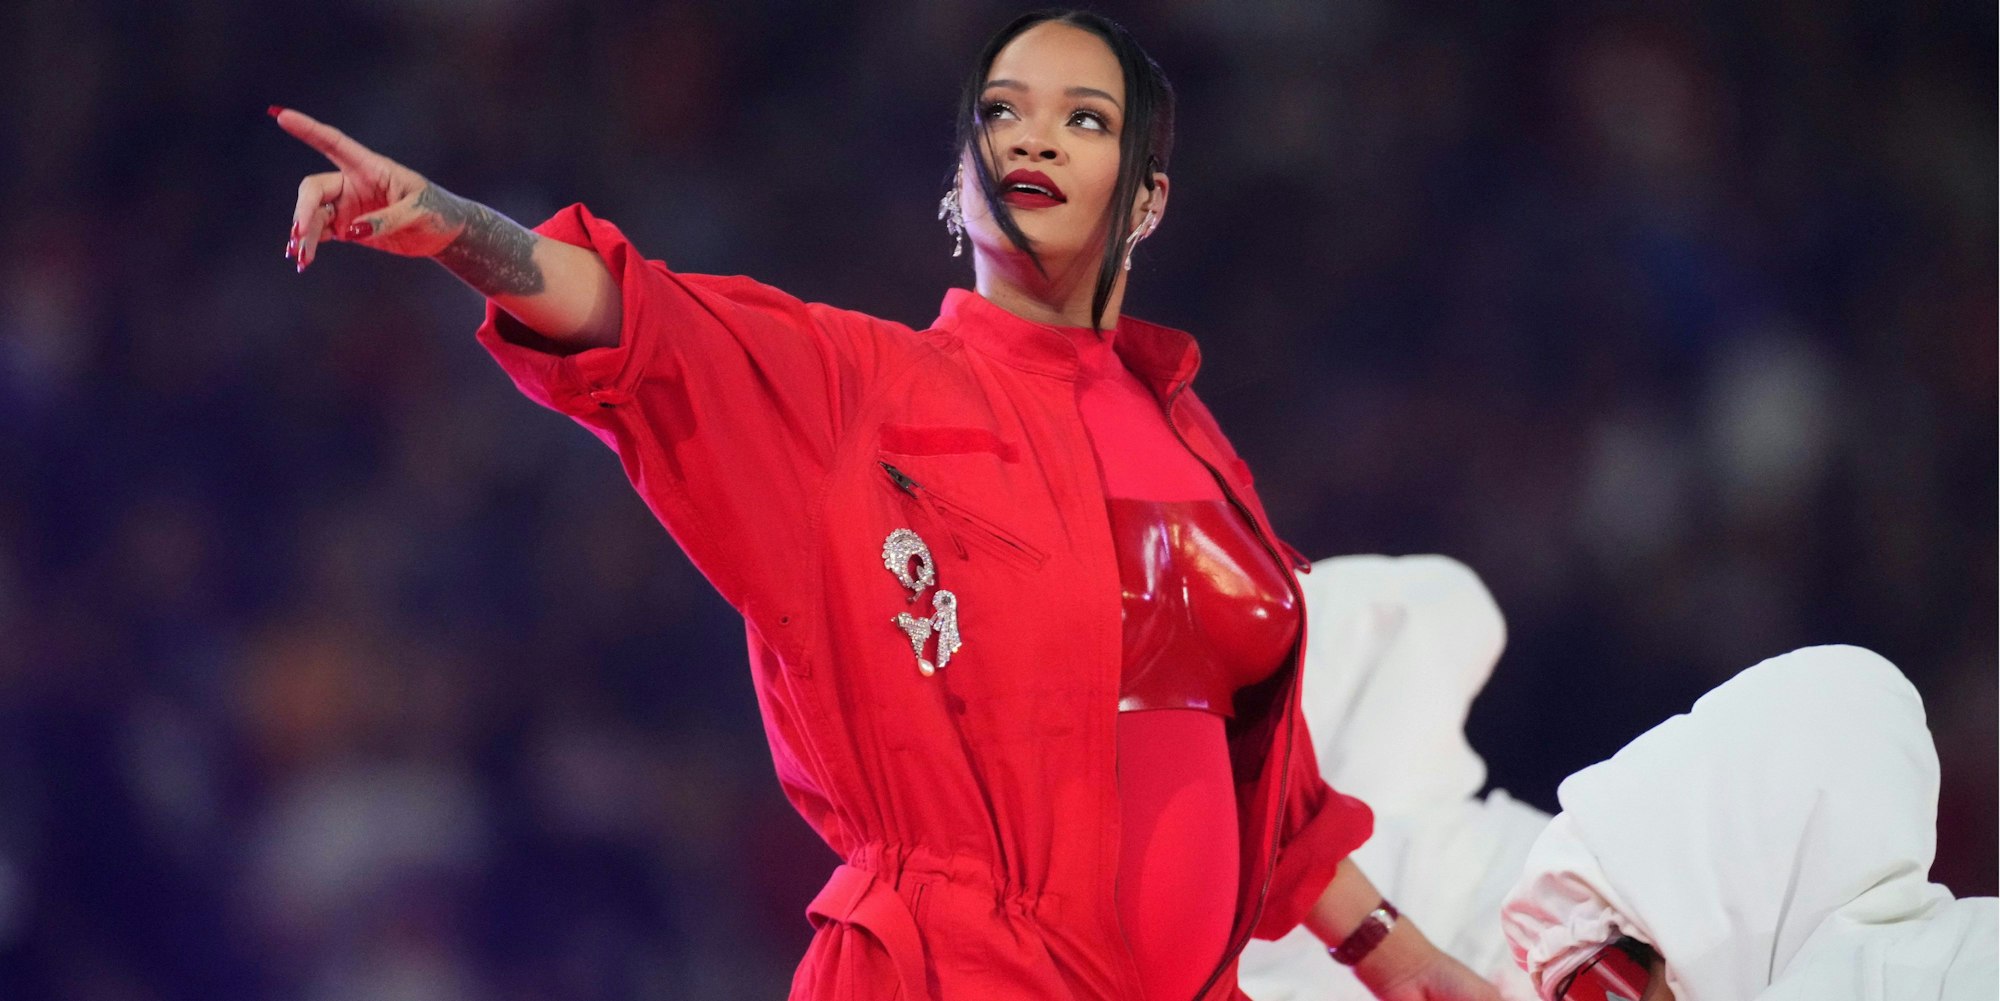 Rihanna tritt während der Halbzeitshow des Super Bowl im State Farm Stadium in Glendale, Arizona auf. Sie trägt einen hellroten Anzug mit dunkelroter Brustplatte.